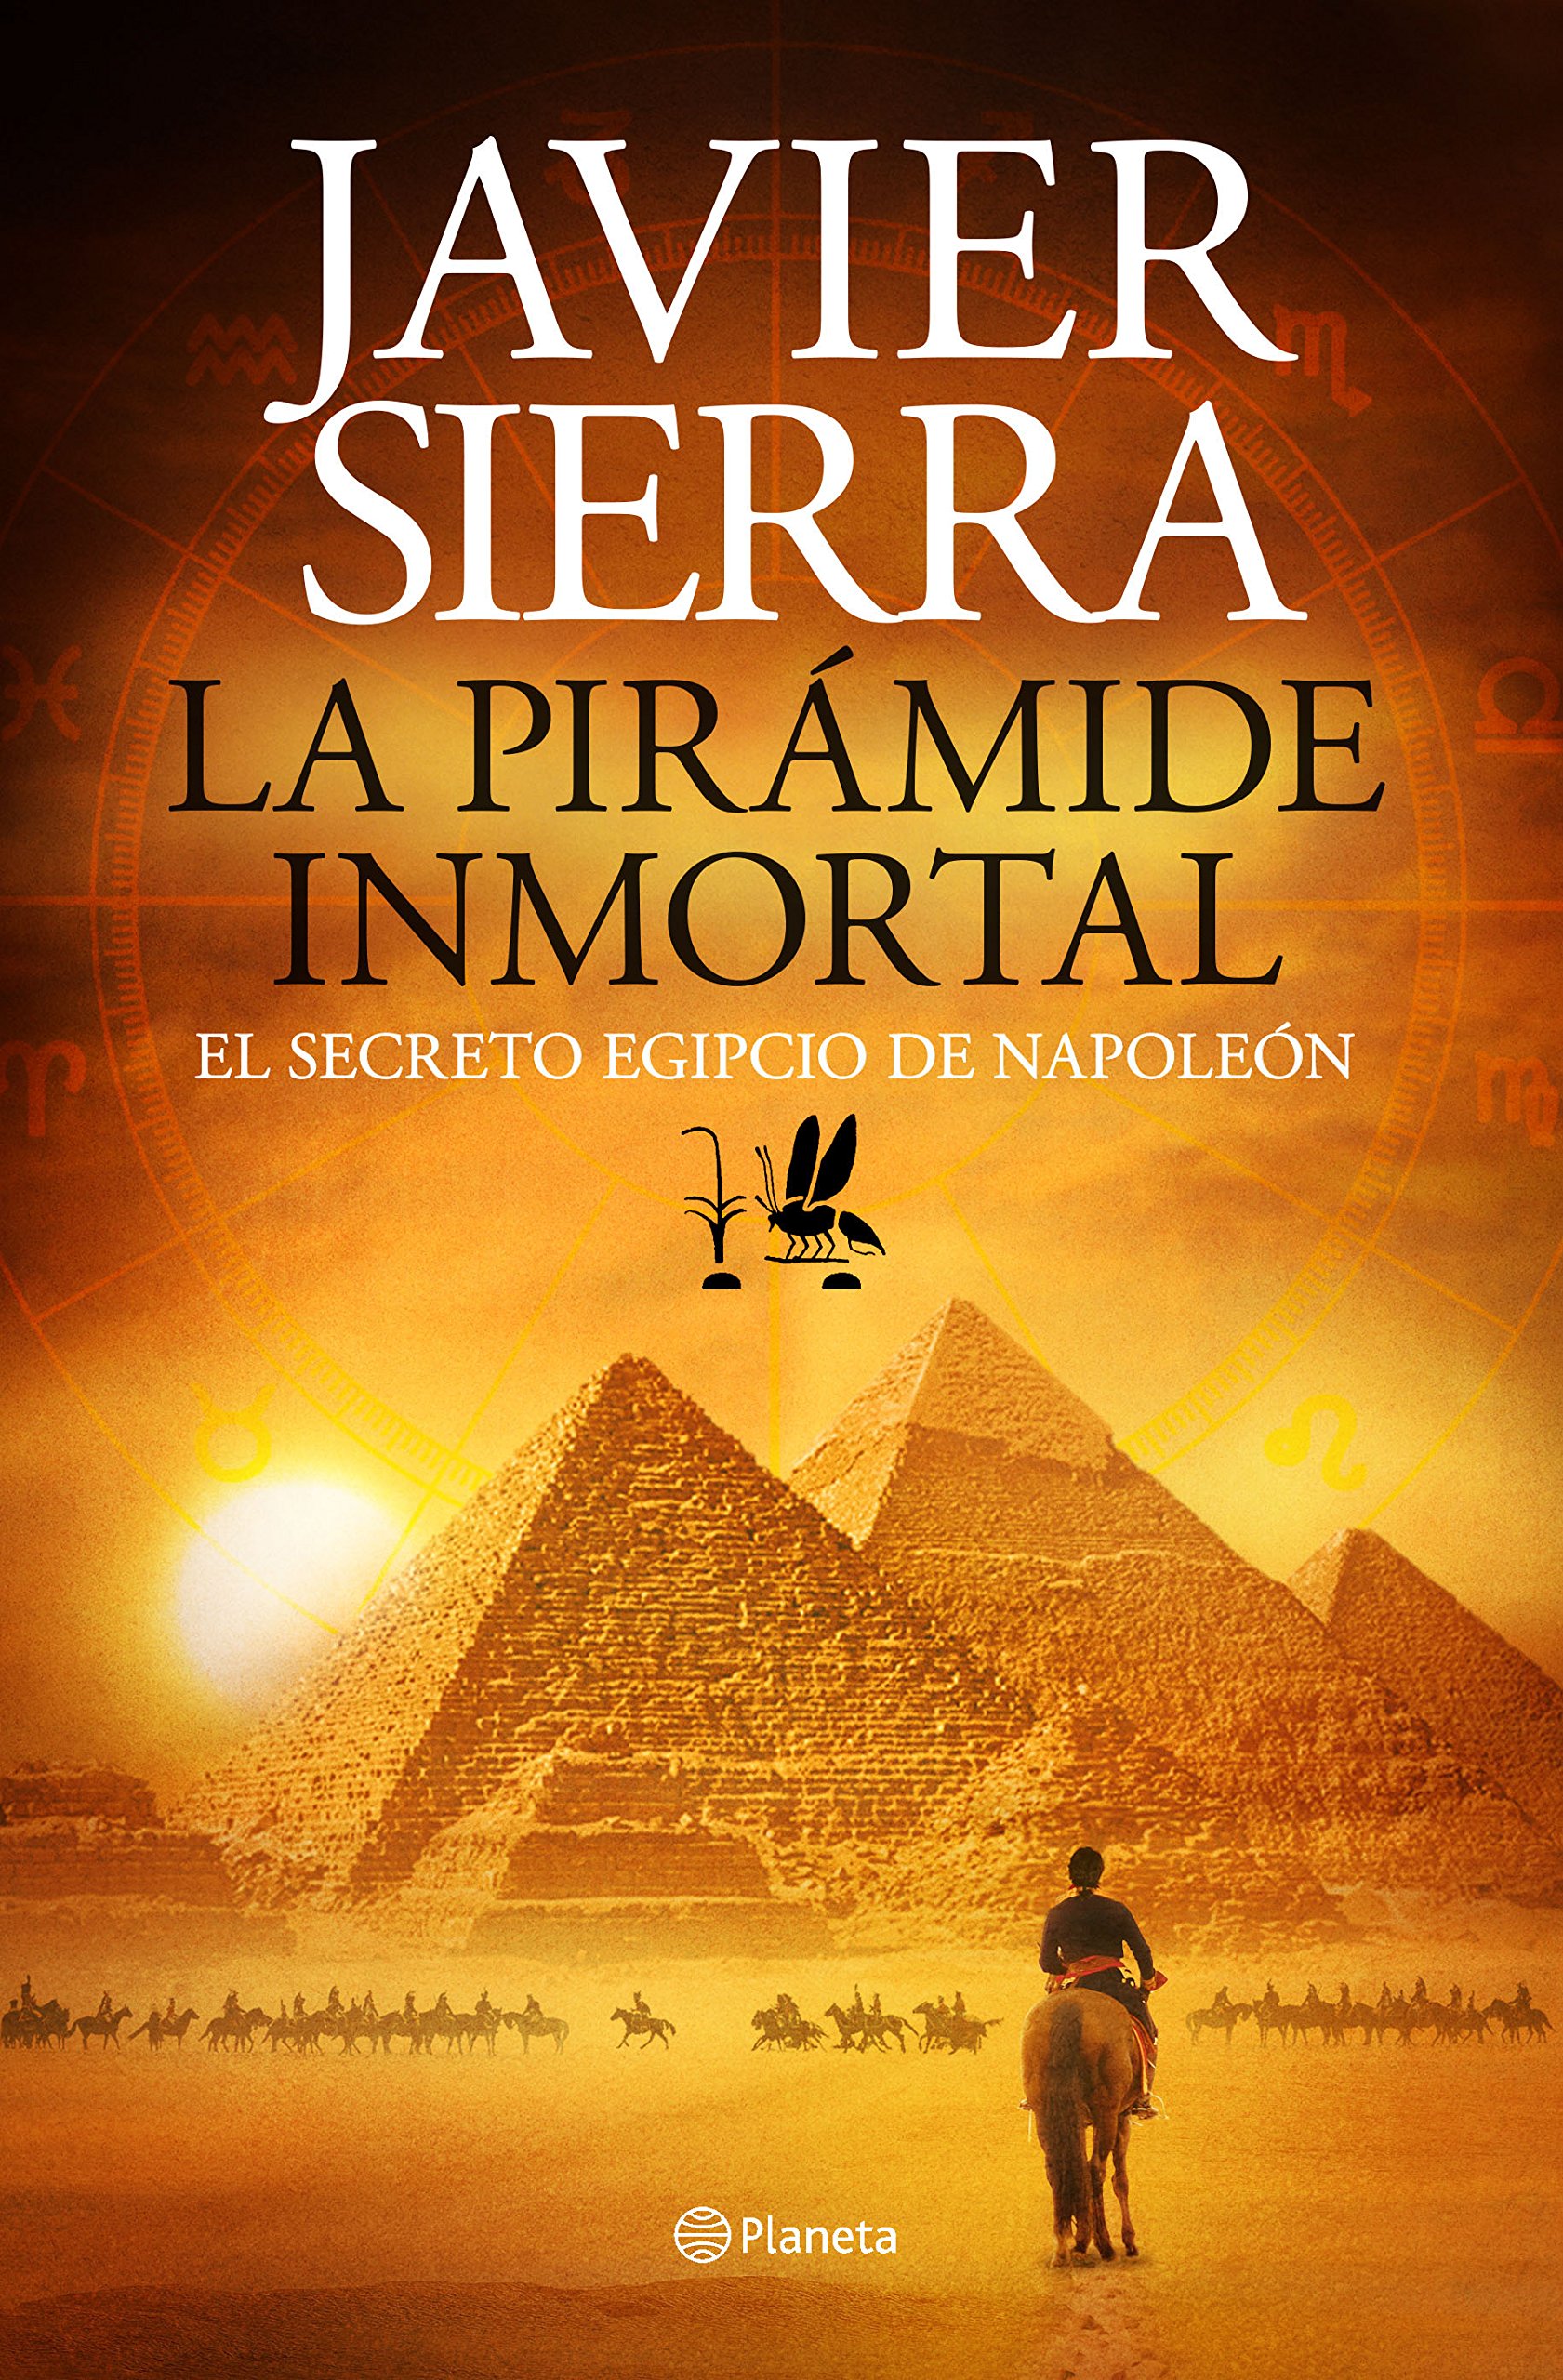 La pirámide inmortal: El secreto egipcio de Napoleón Javier Sierra